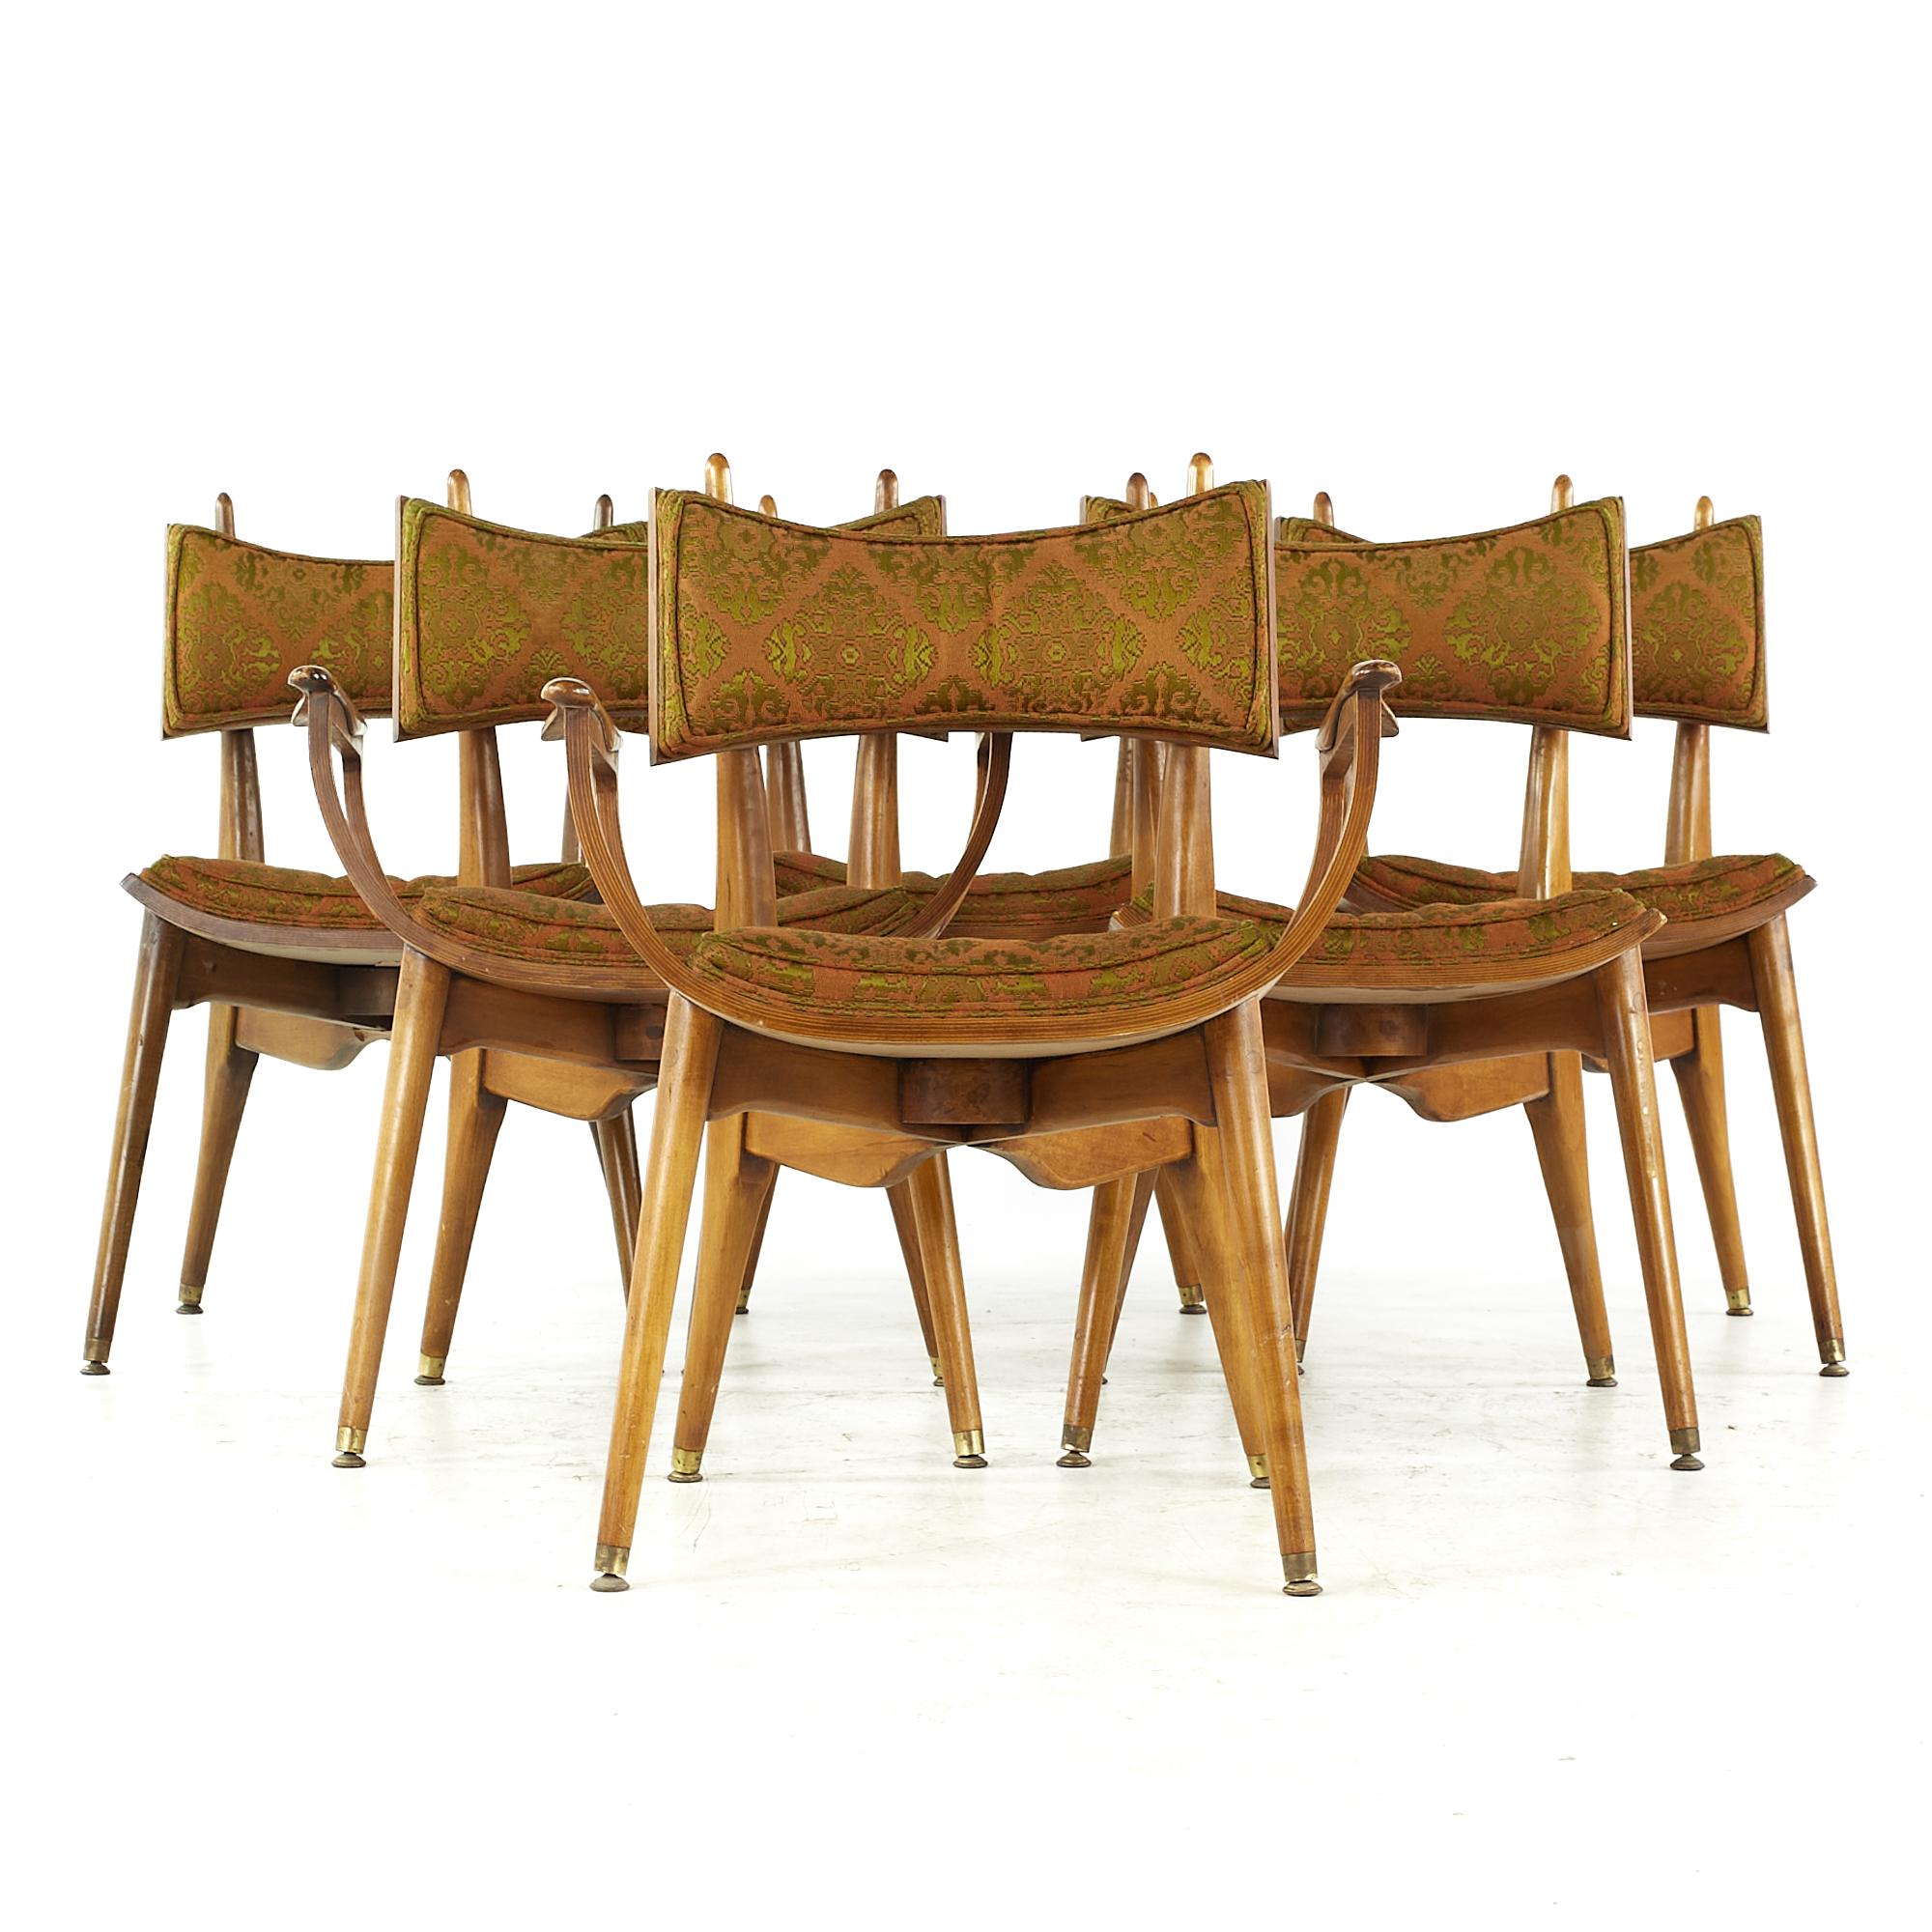 Harold Schwartz for Romweber midcentury Burlwood dining chairs - Set of 6

Chaque fauteuil sans accoudoir mesure 19,25 de large x 24 de profond x 32,5 de haut, avec une hauteur d'assise de 18,5 pouces.
Chaque fauteuil capitaine mesure : 25,5